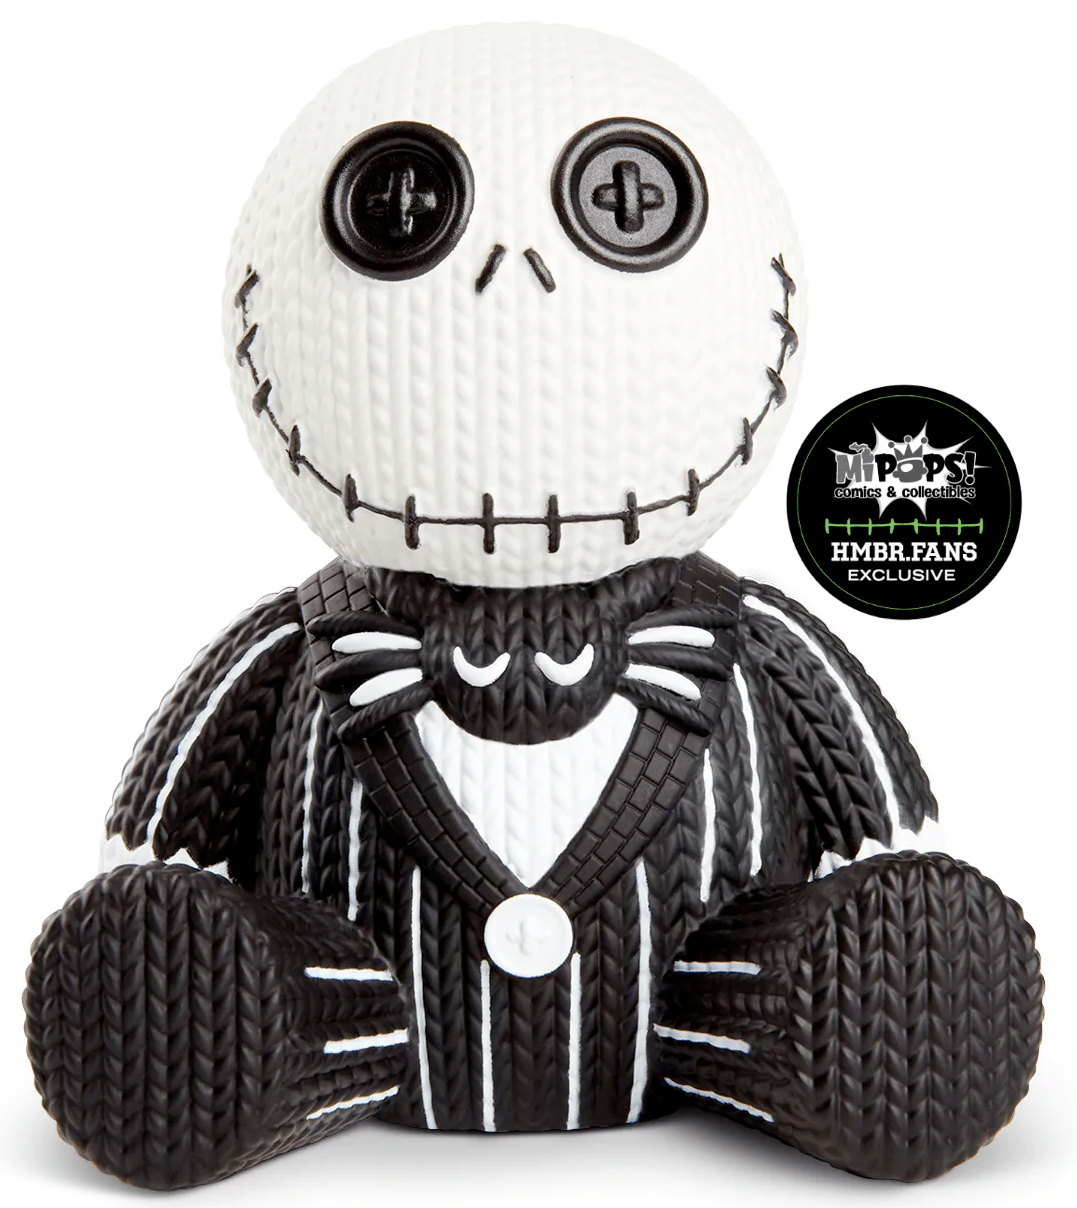 Jack Skellington Handmade By Robots - Boneco de Vinil Fosforescente no Estilo Crochê Amigurumi